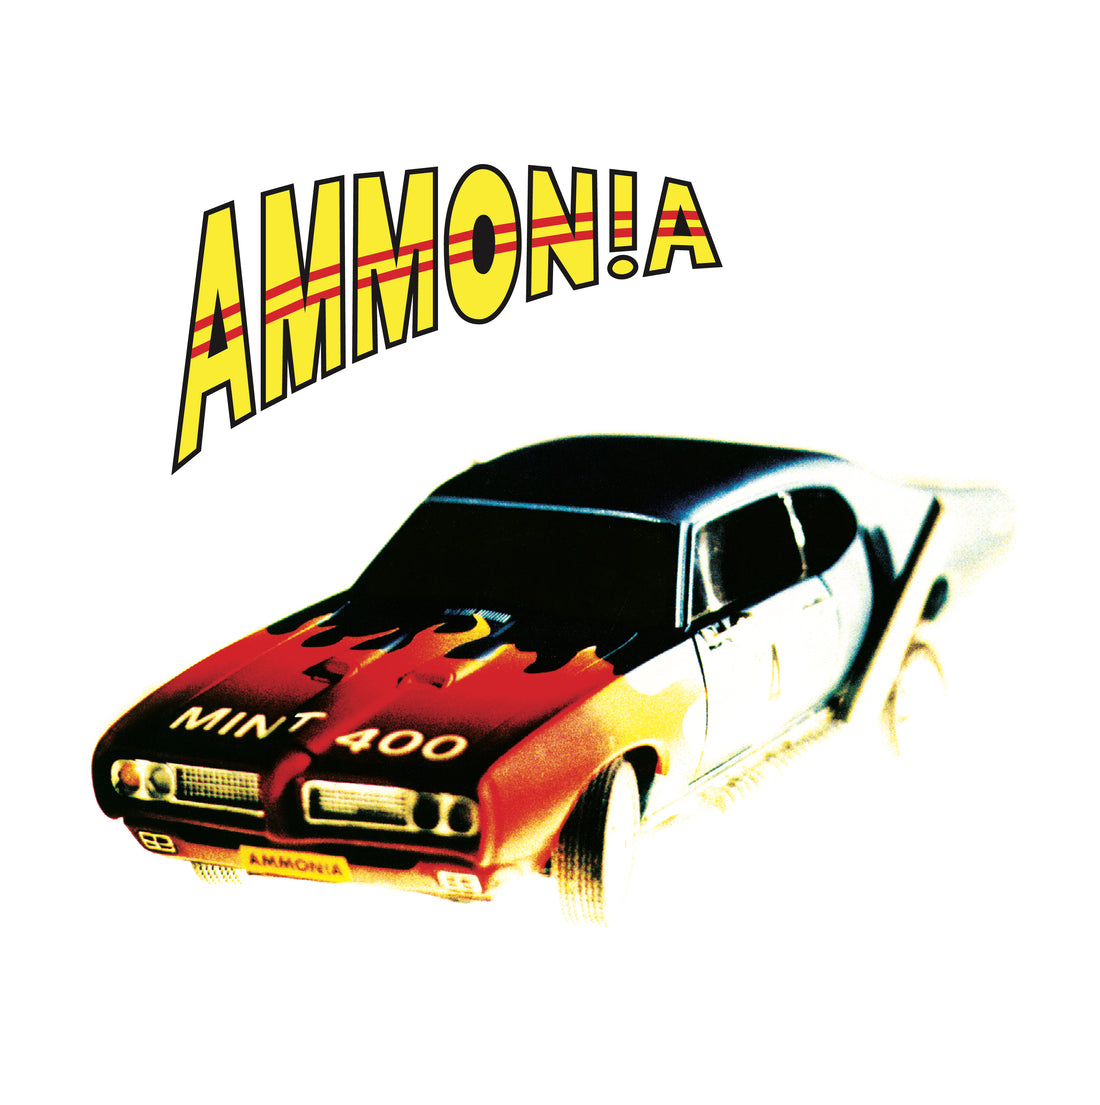 Ammonia - Mint 400